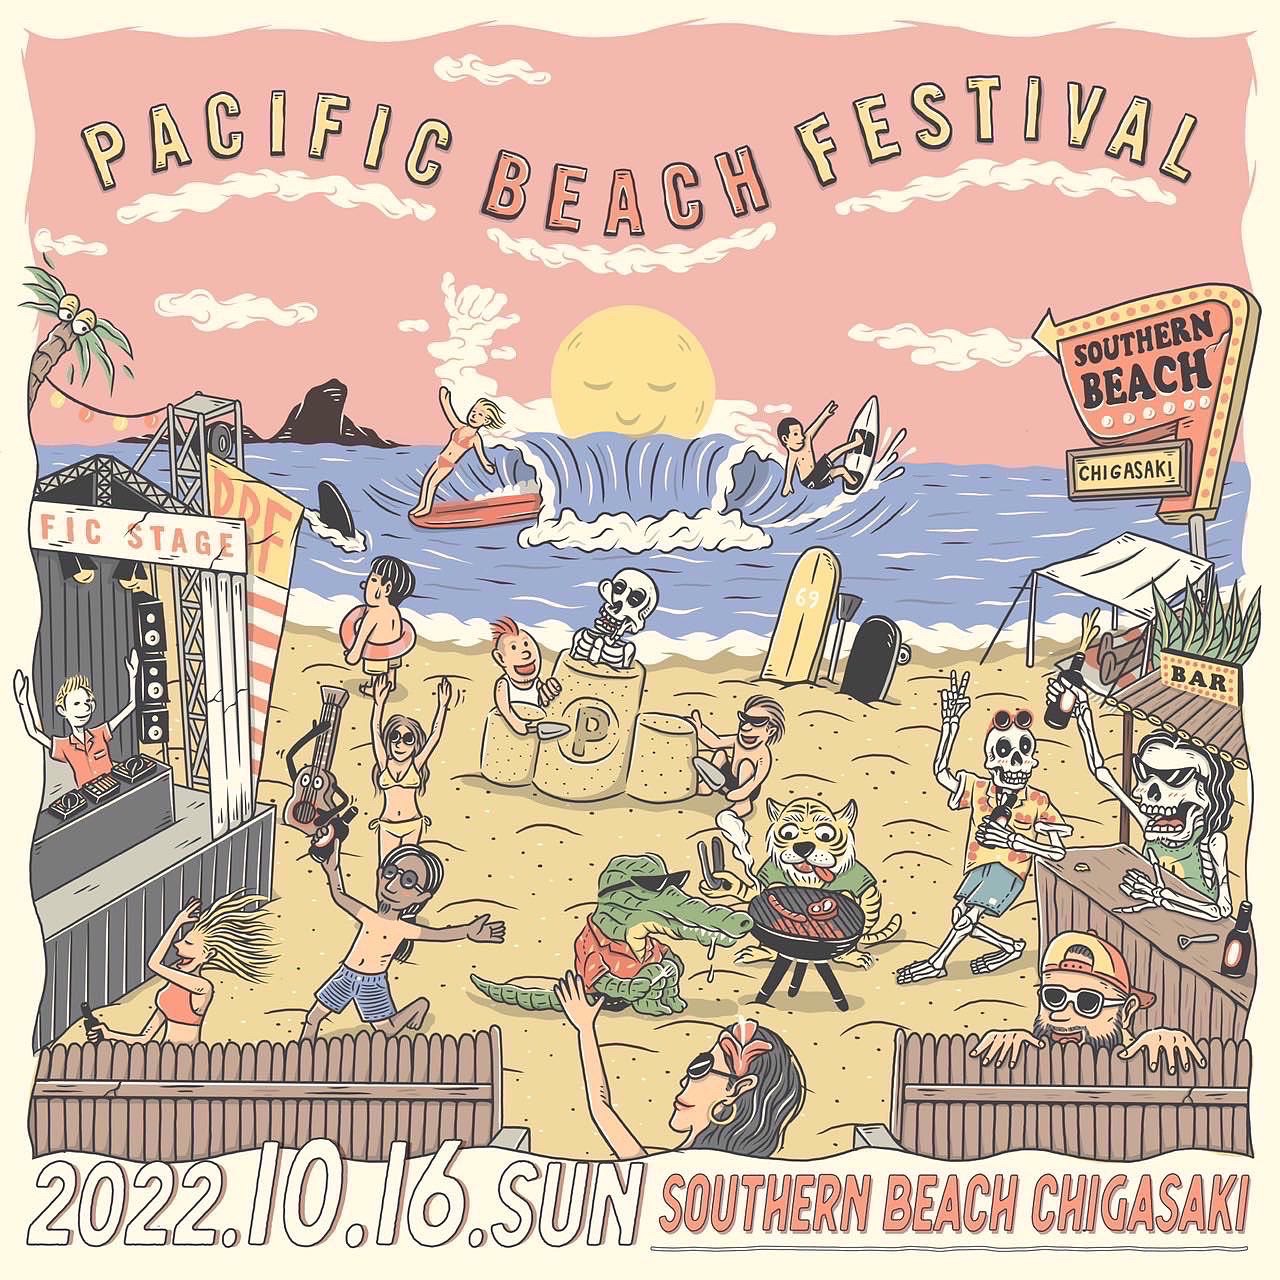 MARKESTA in PACIFIC BEACH FESTIVAL'22